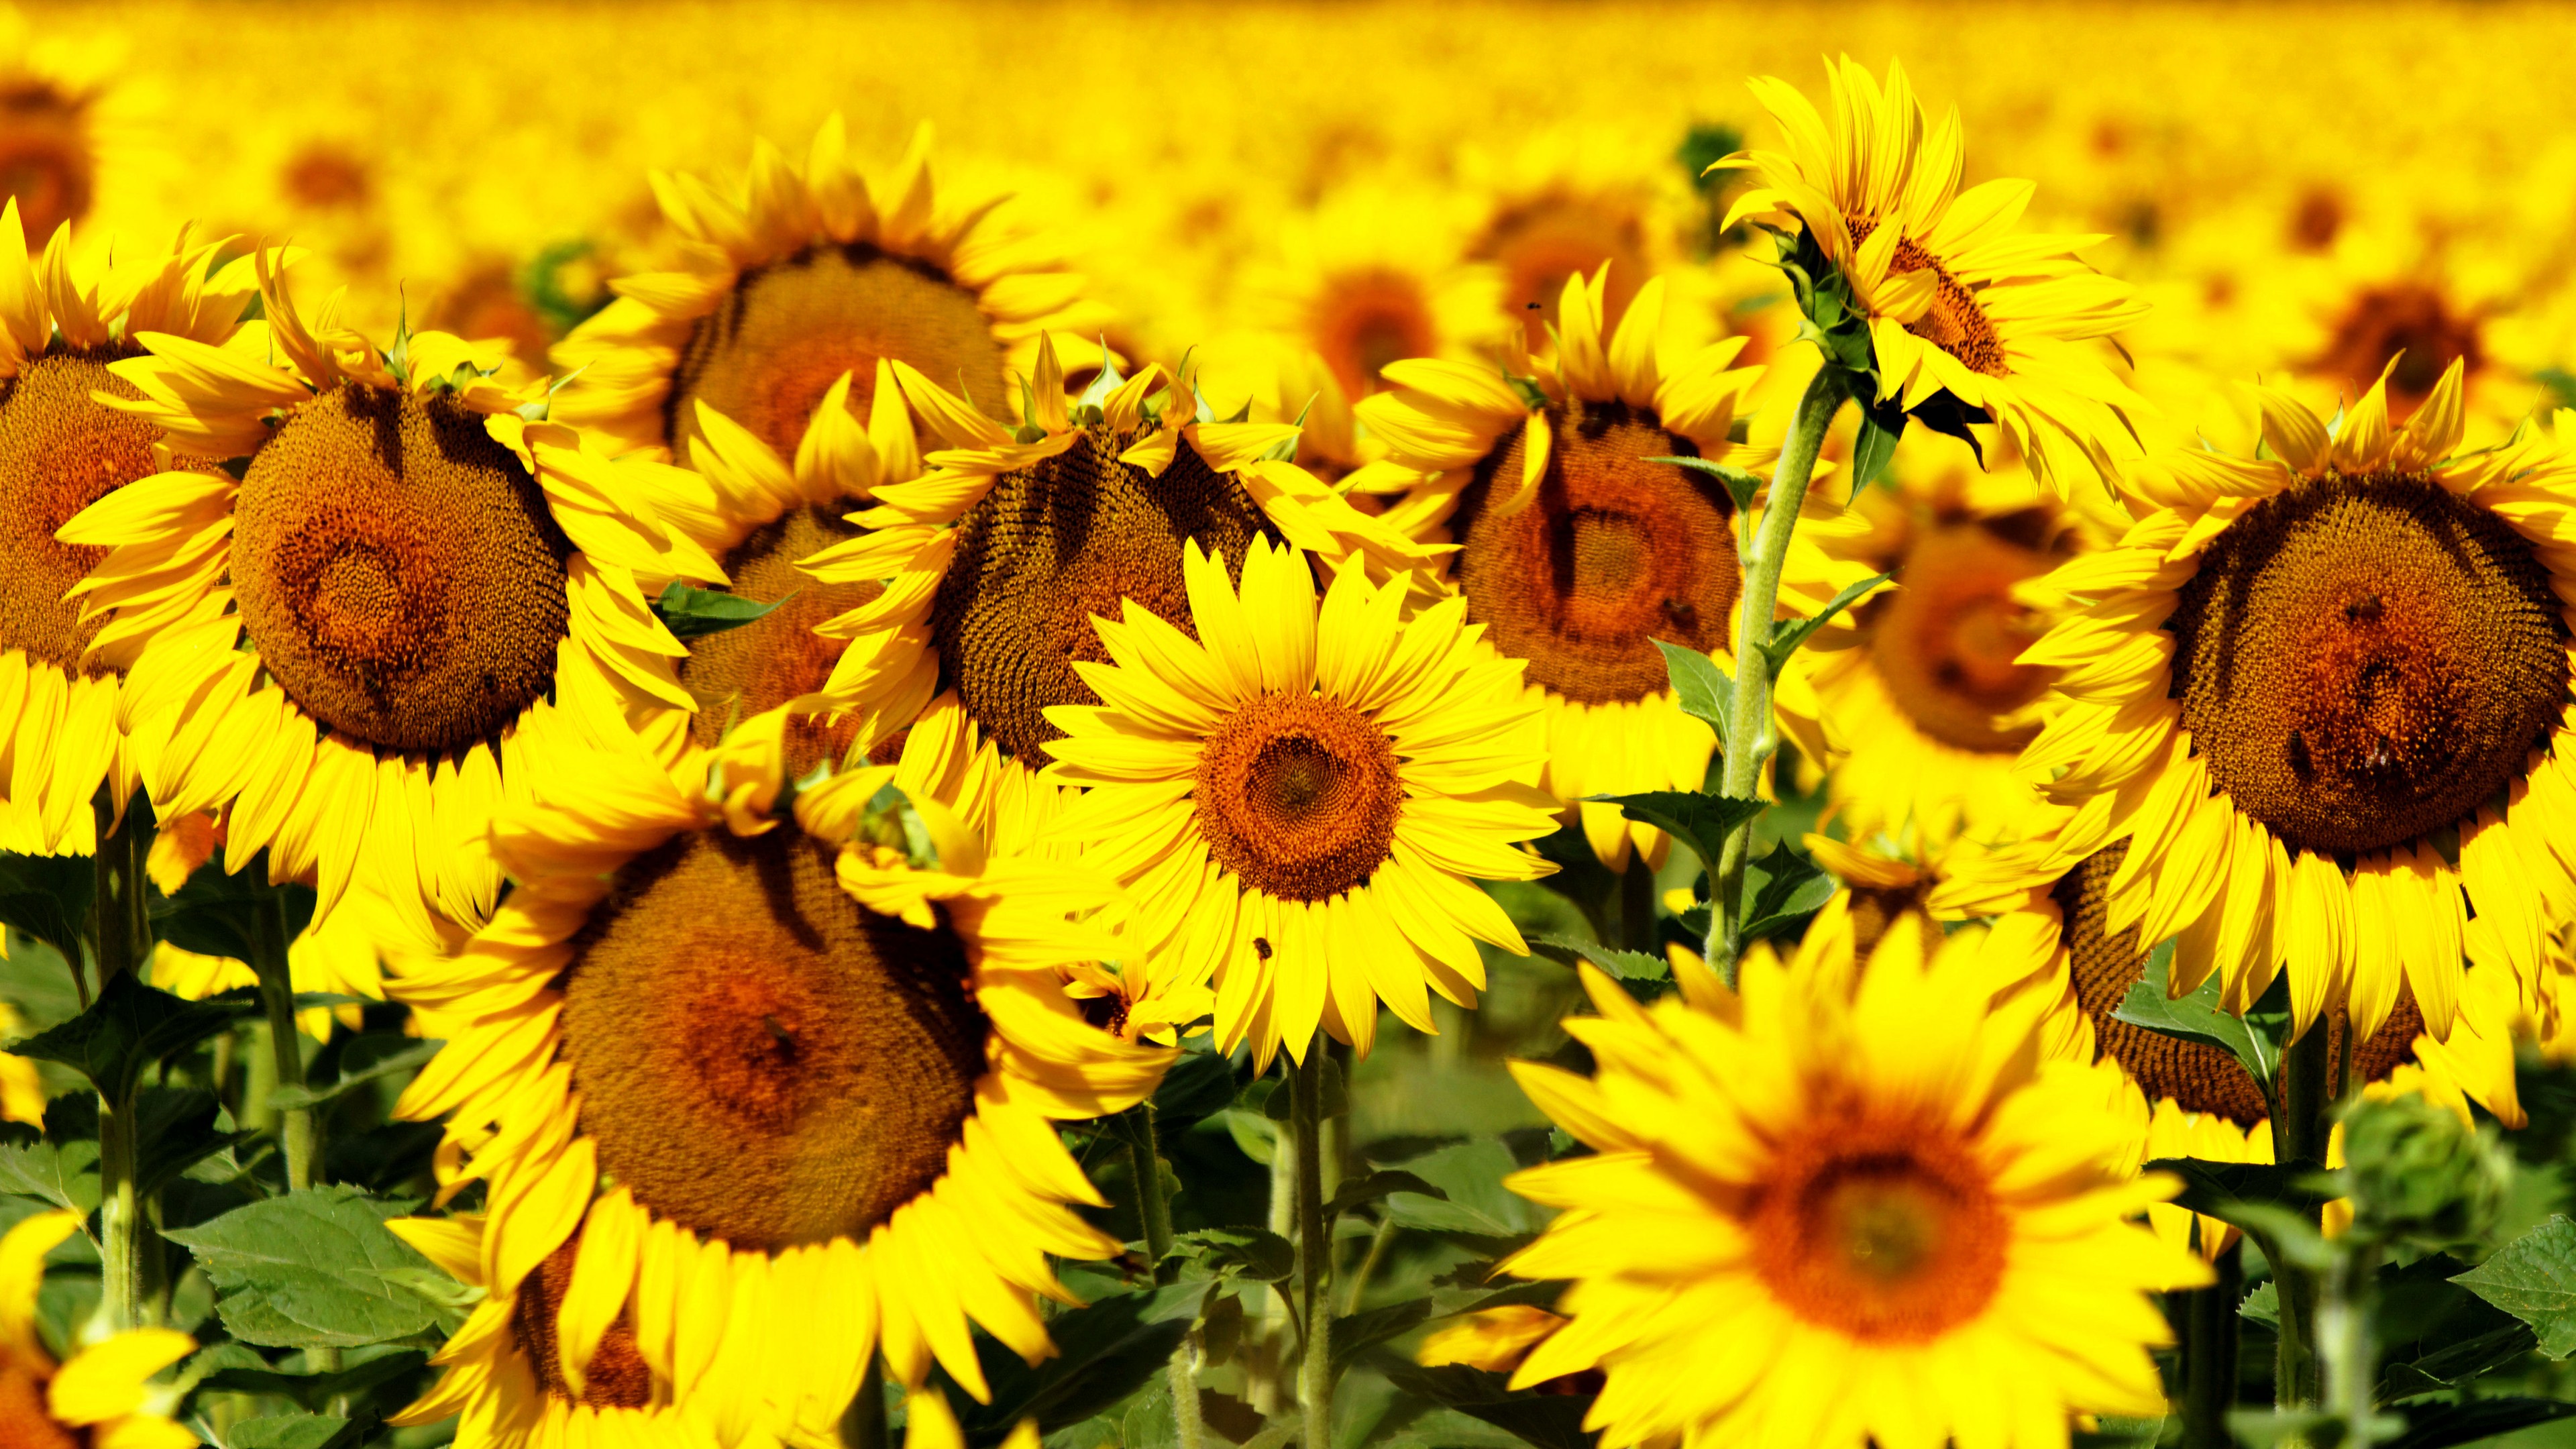 Wallpaper Sunflowers 5k 4k 8k Flowers Field Yellow